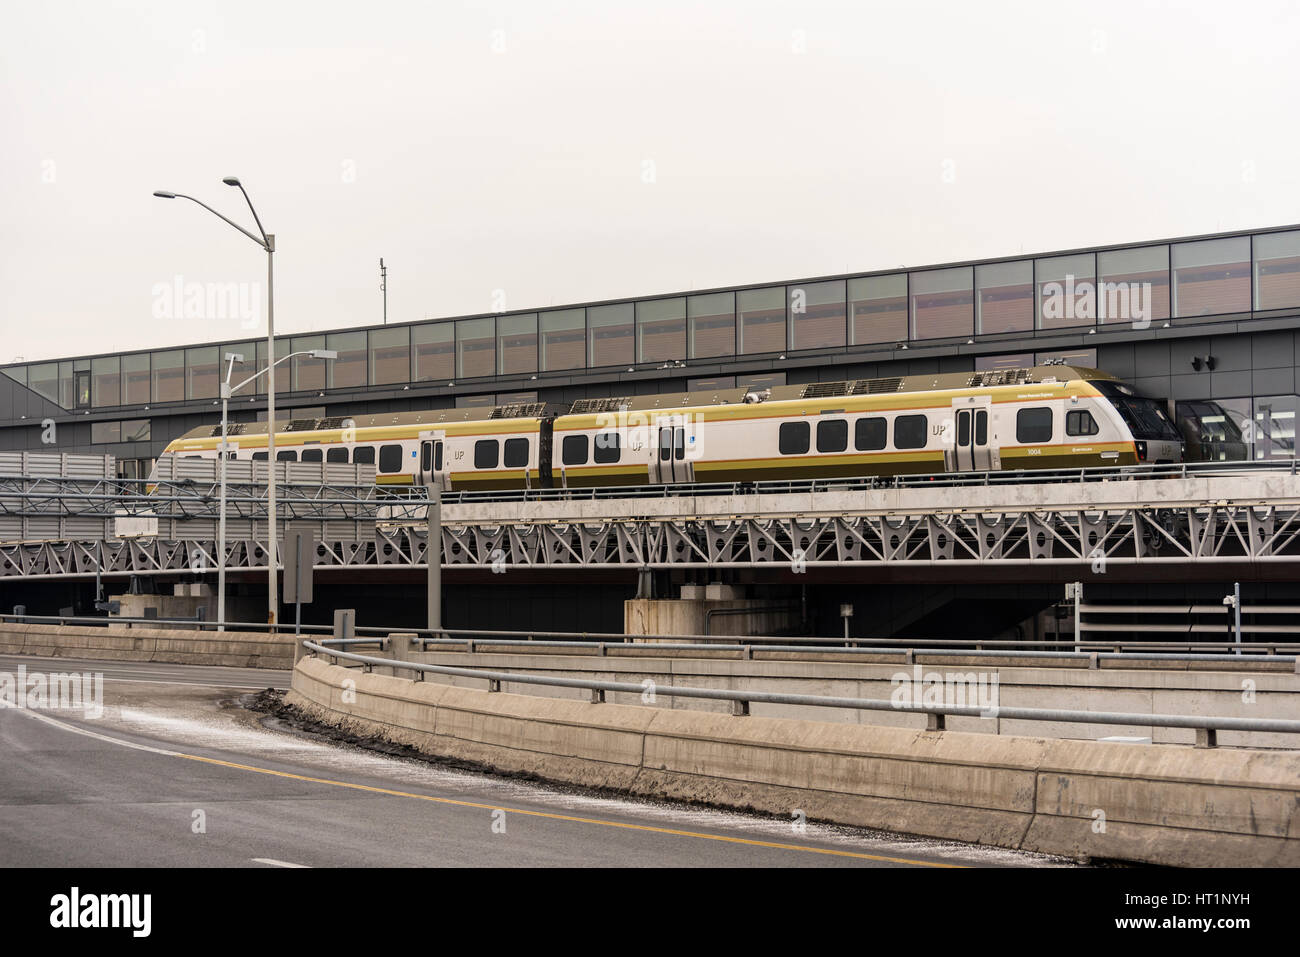 Una unione Pearson o treno in sosta presso l'Aeroporto Internazionale di Toronto Pearson stazione. Foto Stock